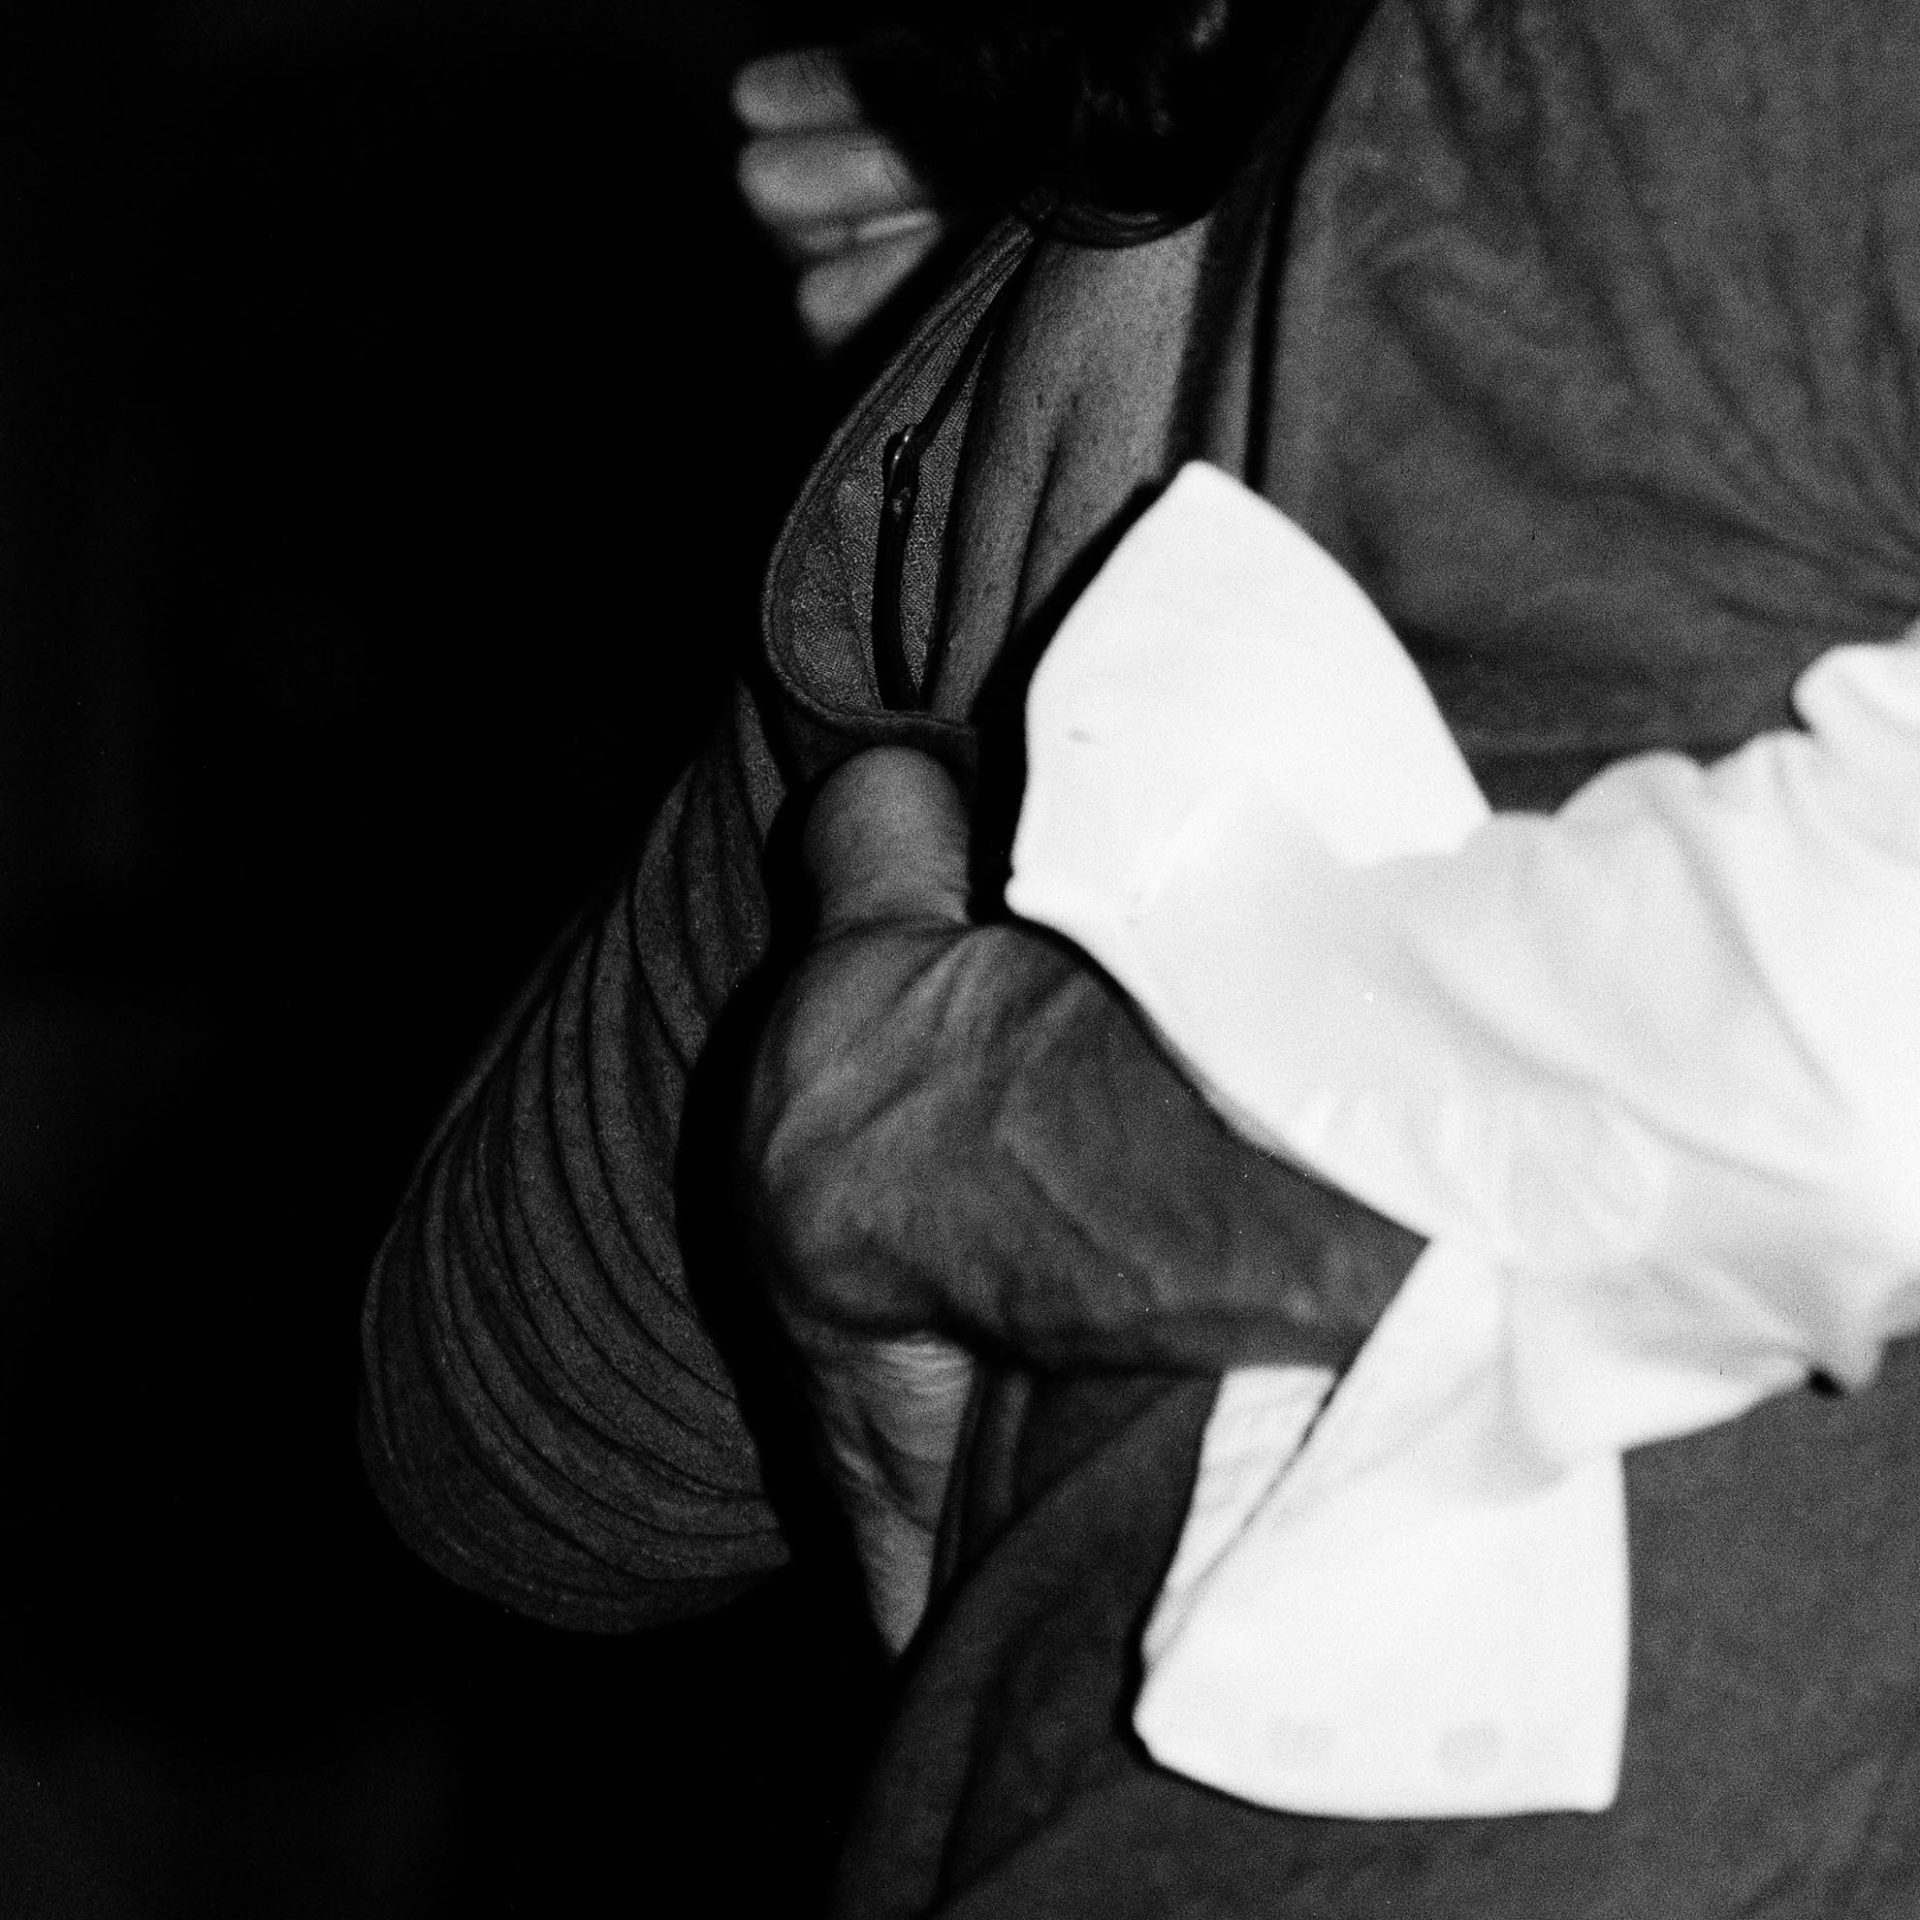 Détail de postures de Tango, photographie argentique en noir et blanc